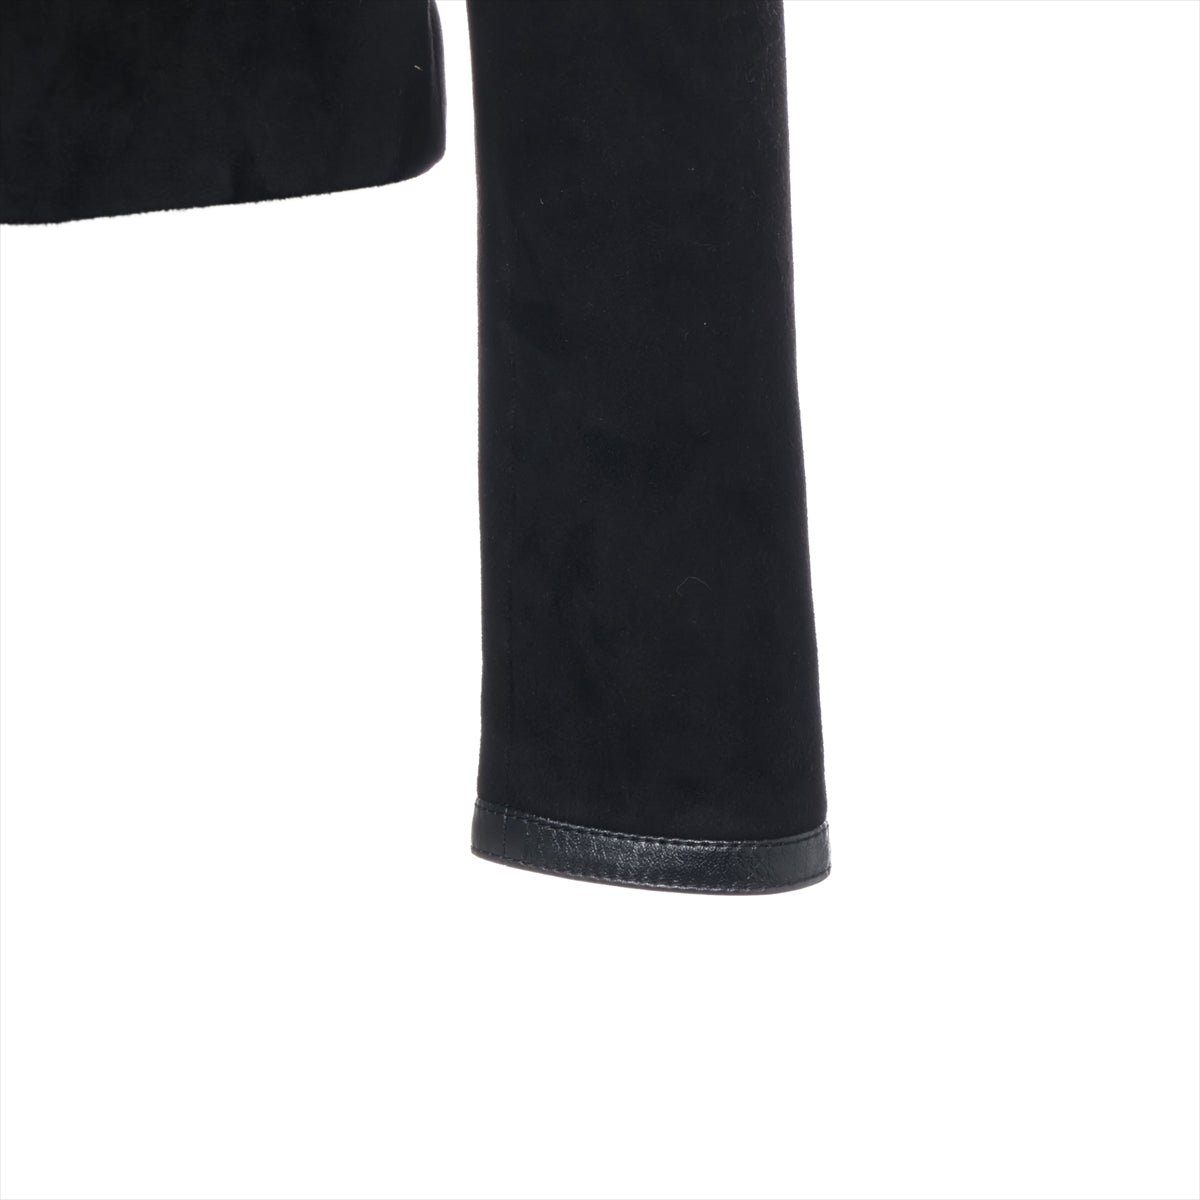 Celine f Goths Jacket 36  Black 2F191657E Eddy Period